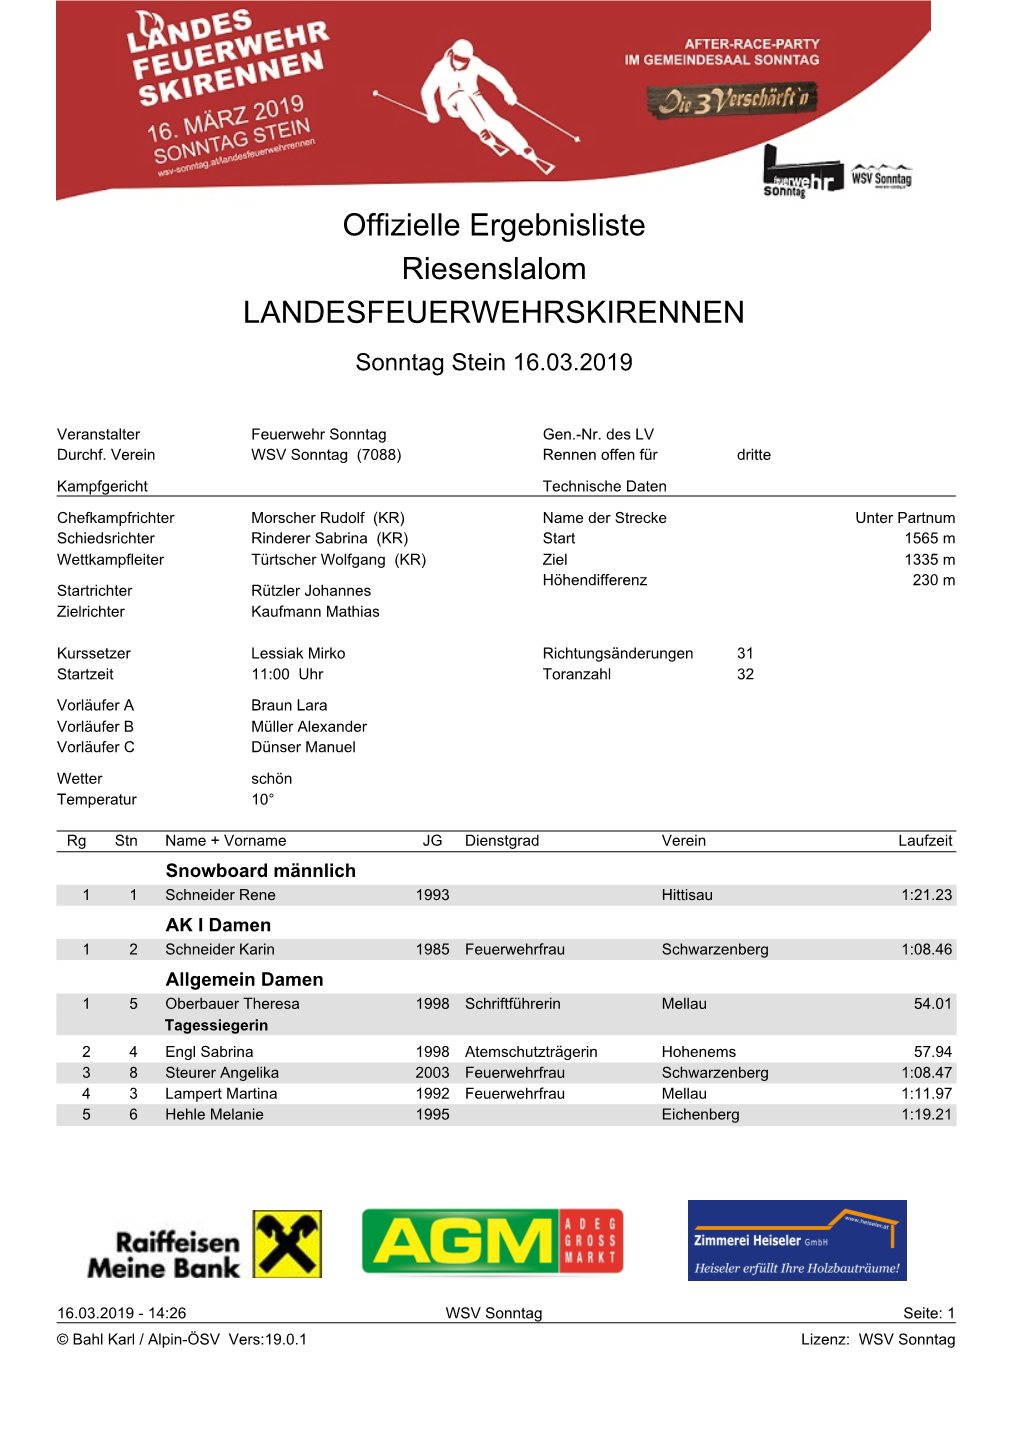 Offizielle Ergebnisliste Riesenslalom LANDESFEUERWEHRSKIRENNEN Sonntag Stein 16.03.2019